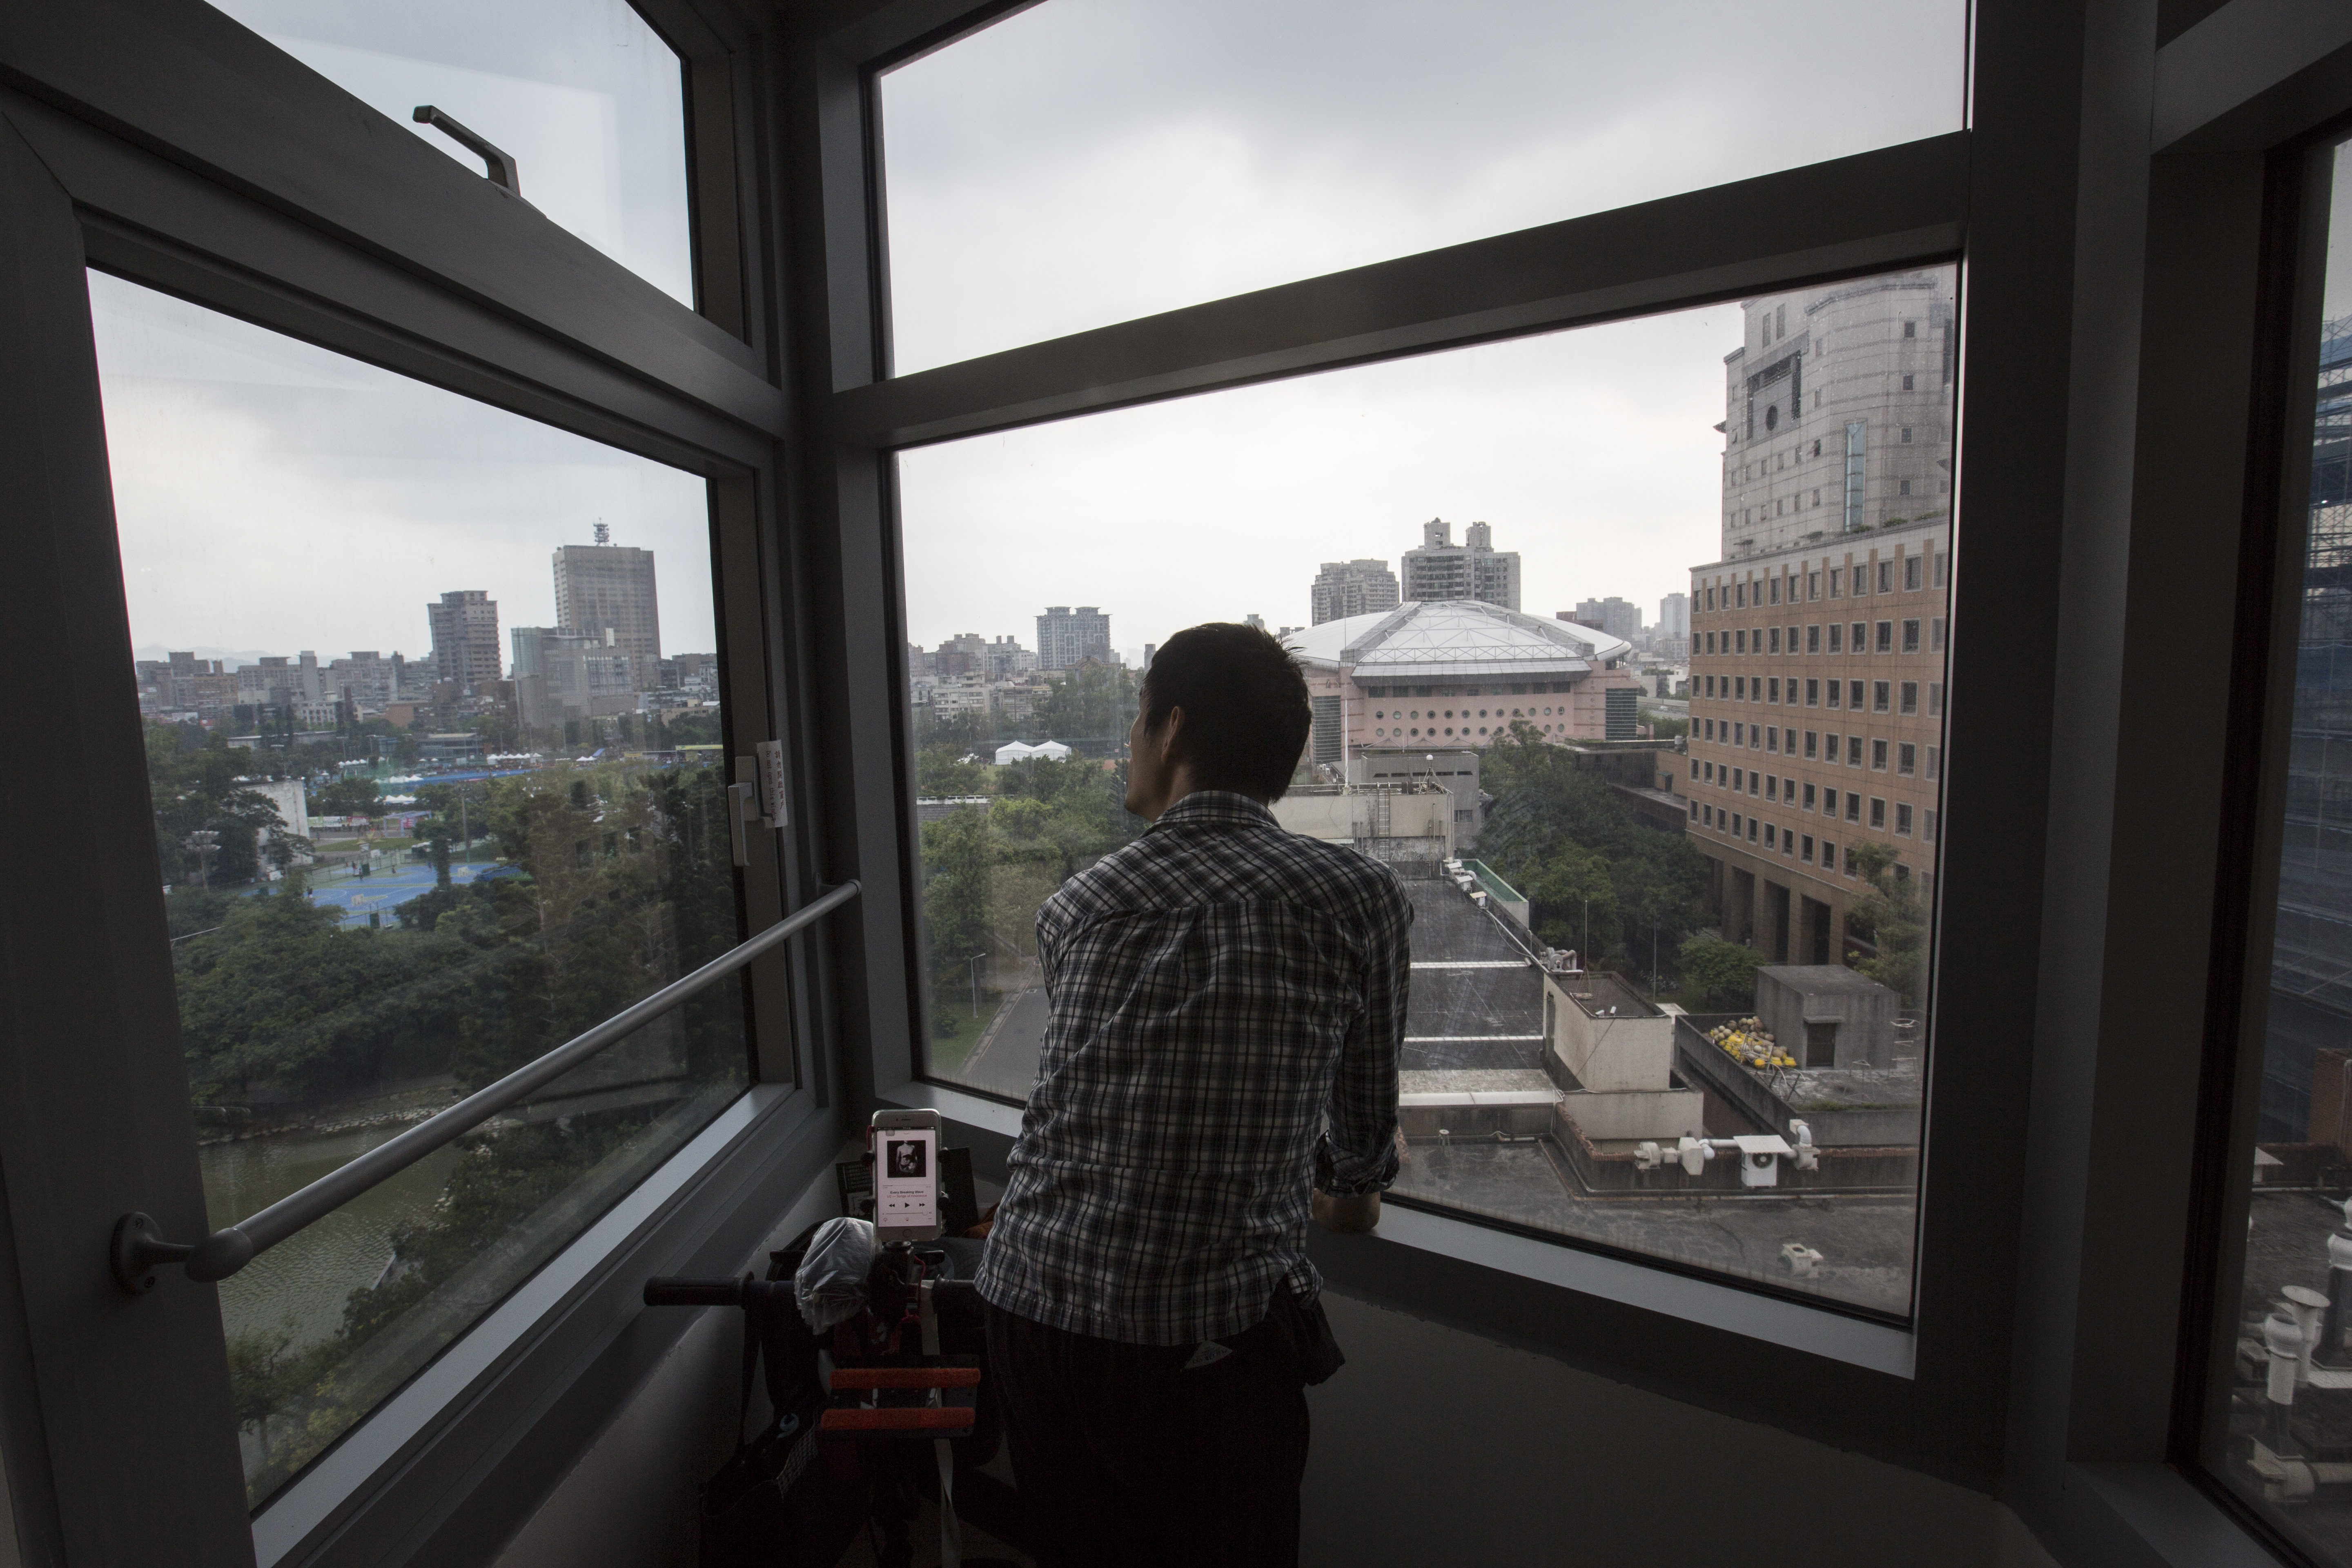 孫嘉梁在台大天文數學館的窗邊眺望景色。